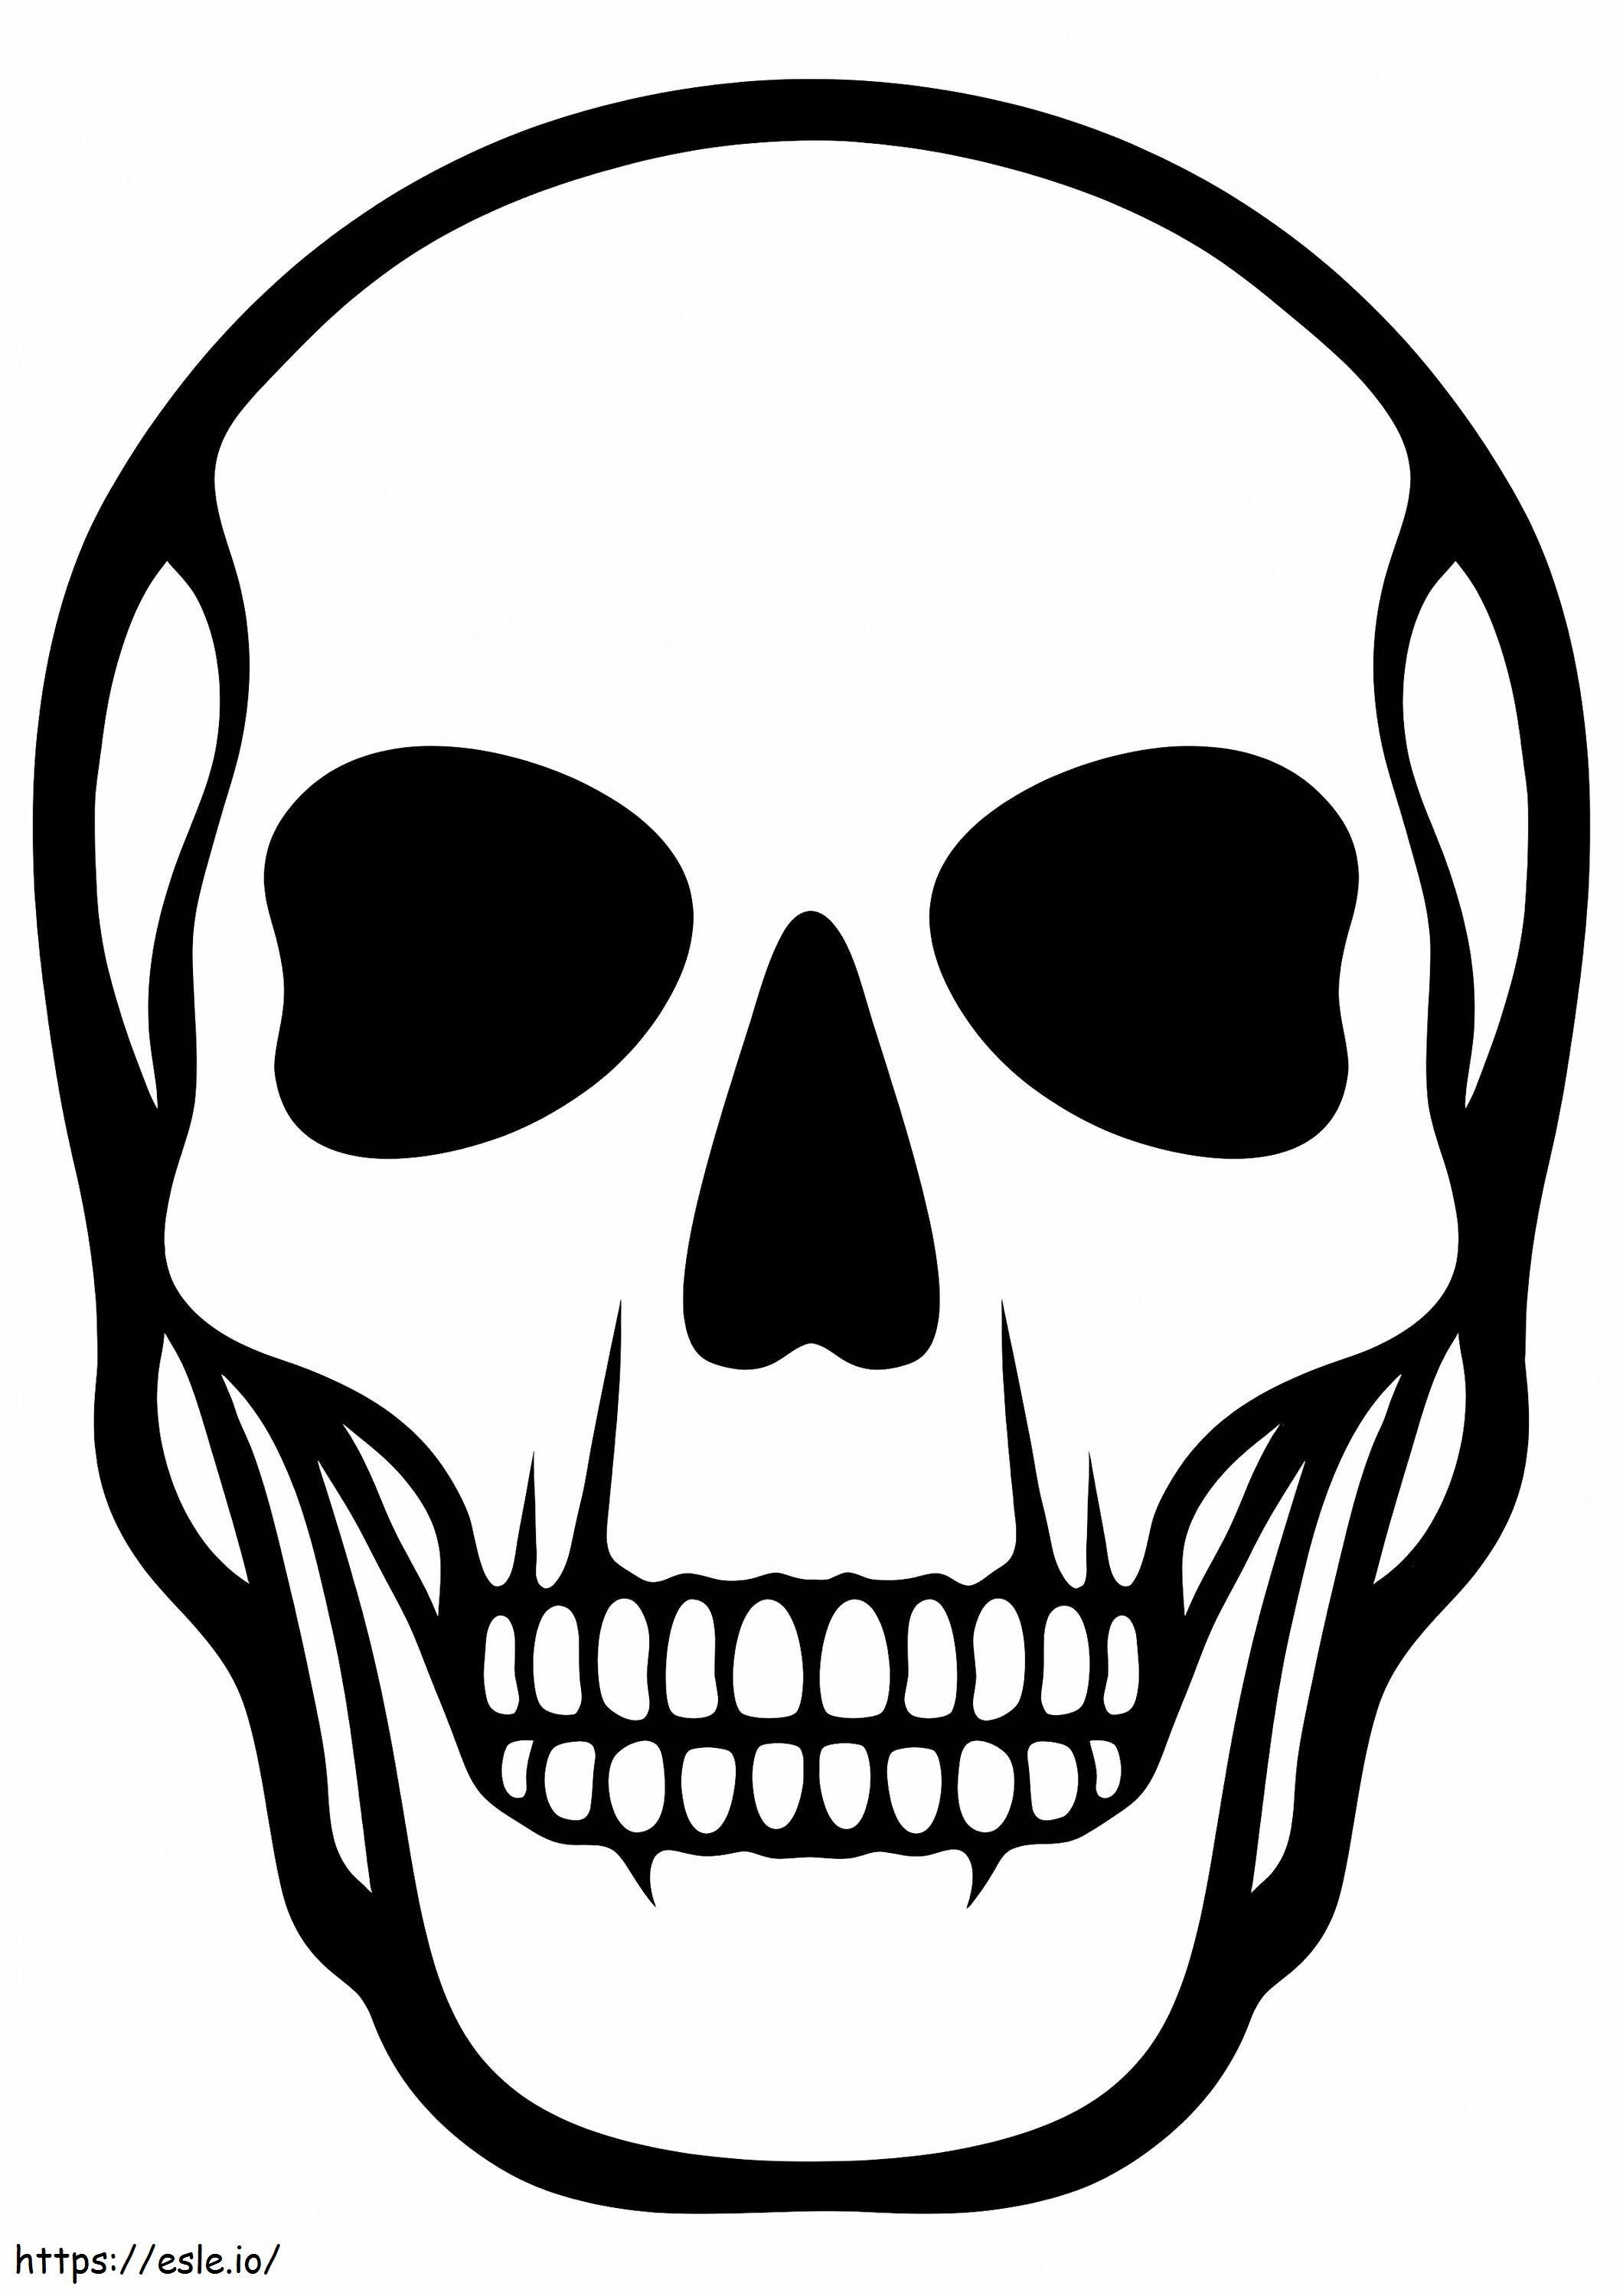 Coloriage 1526903394 Squelette de crâne humain A4 à imprimer dessin